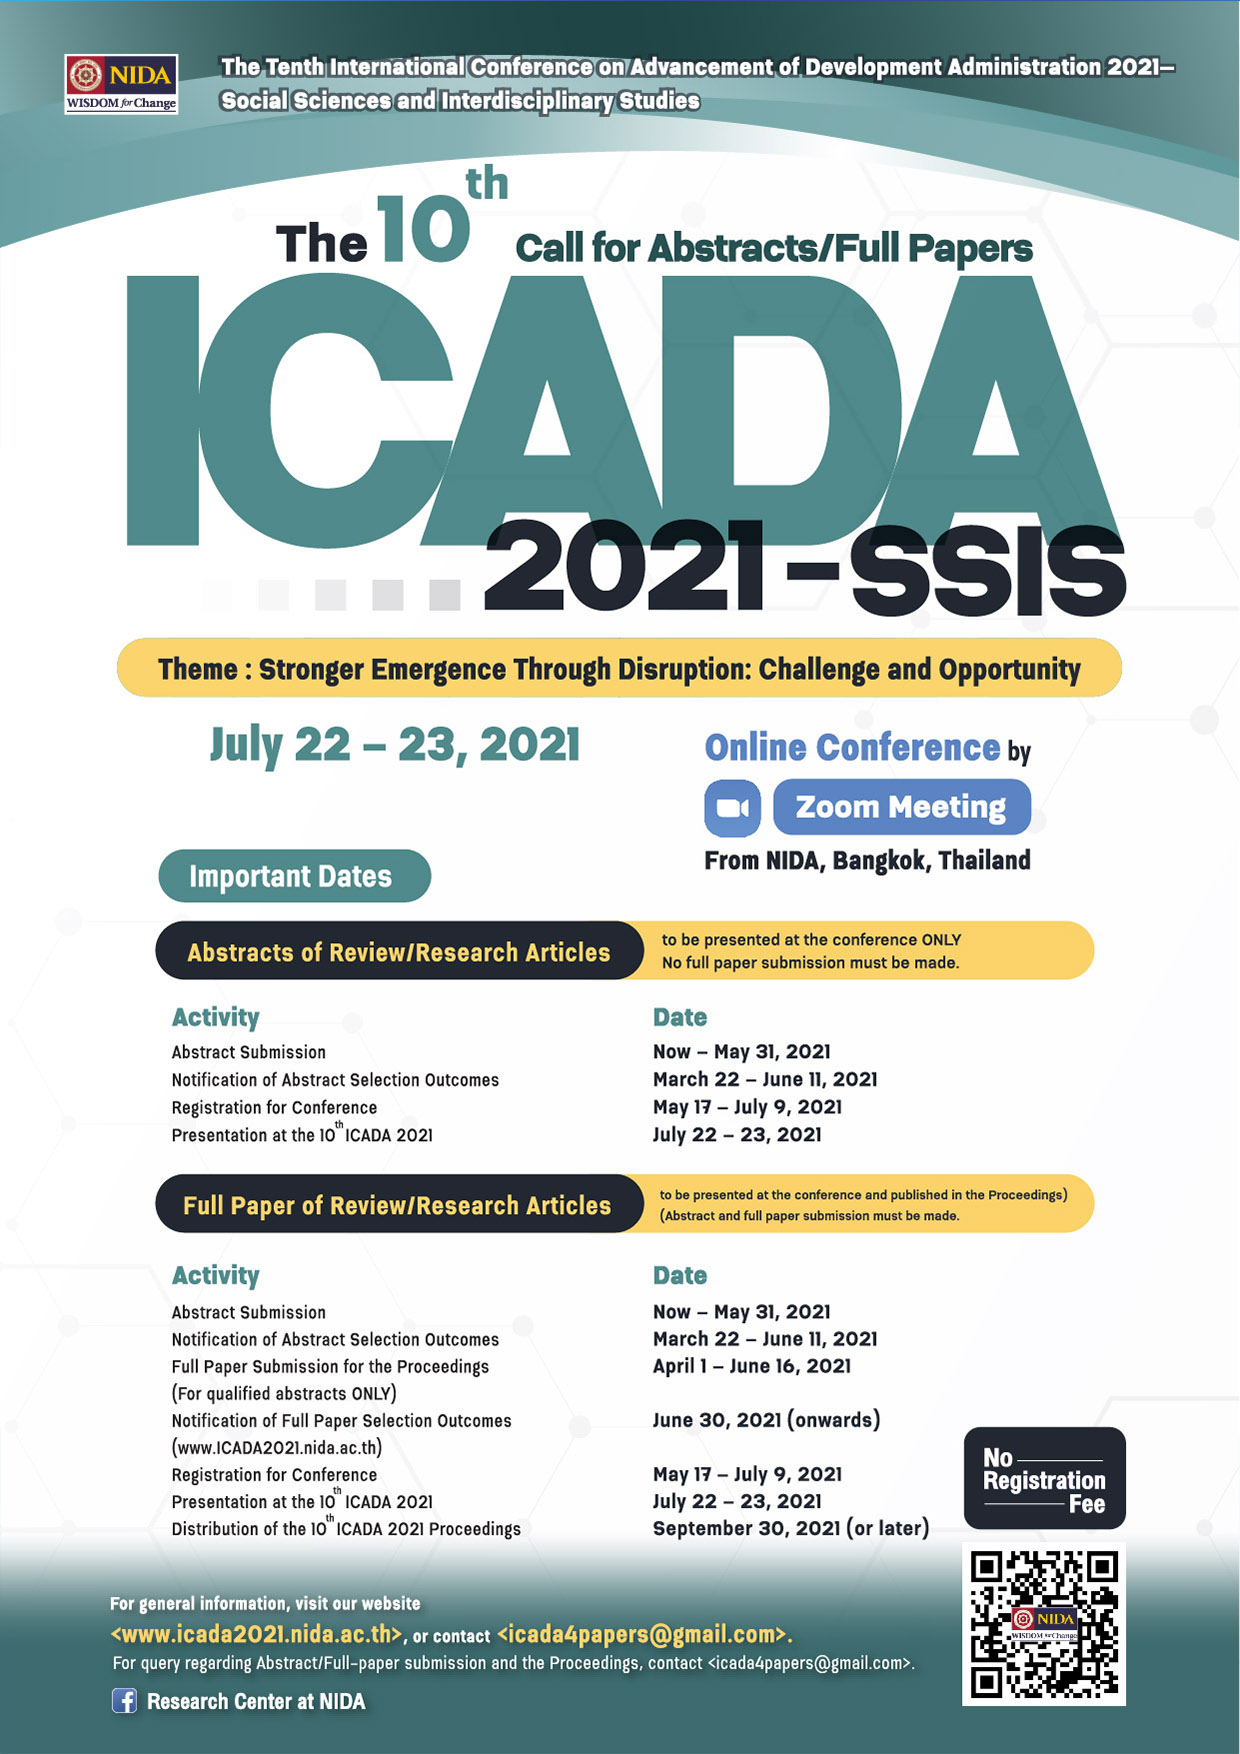 ขอเชิญเข้าร่วมรับฟังการนำเสนอผลงานในงานประชุมวิชาการระดับนานาชาติ The Tenth International Conference on Advancement of Development Administration 2021—Social Sciences and Interdisciplinary Studies (the 10th ICADA 2021—SSIS) (the 10th ICADA 2021—SSIS)